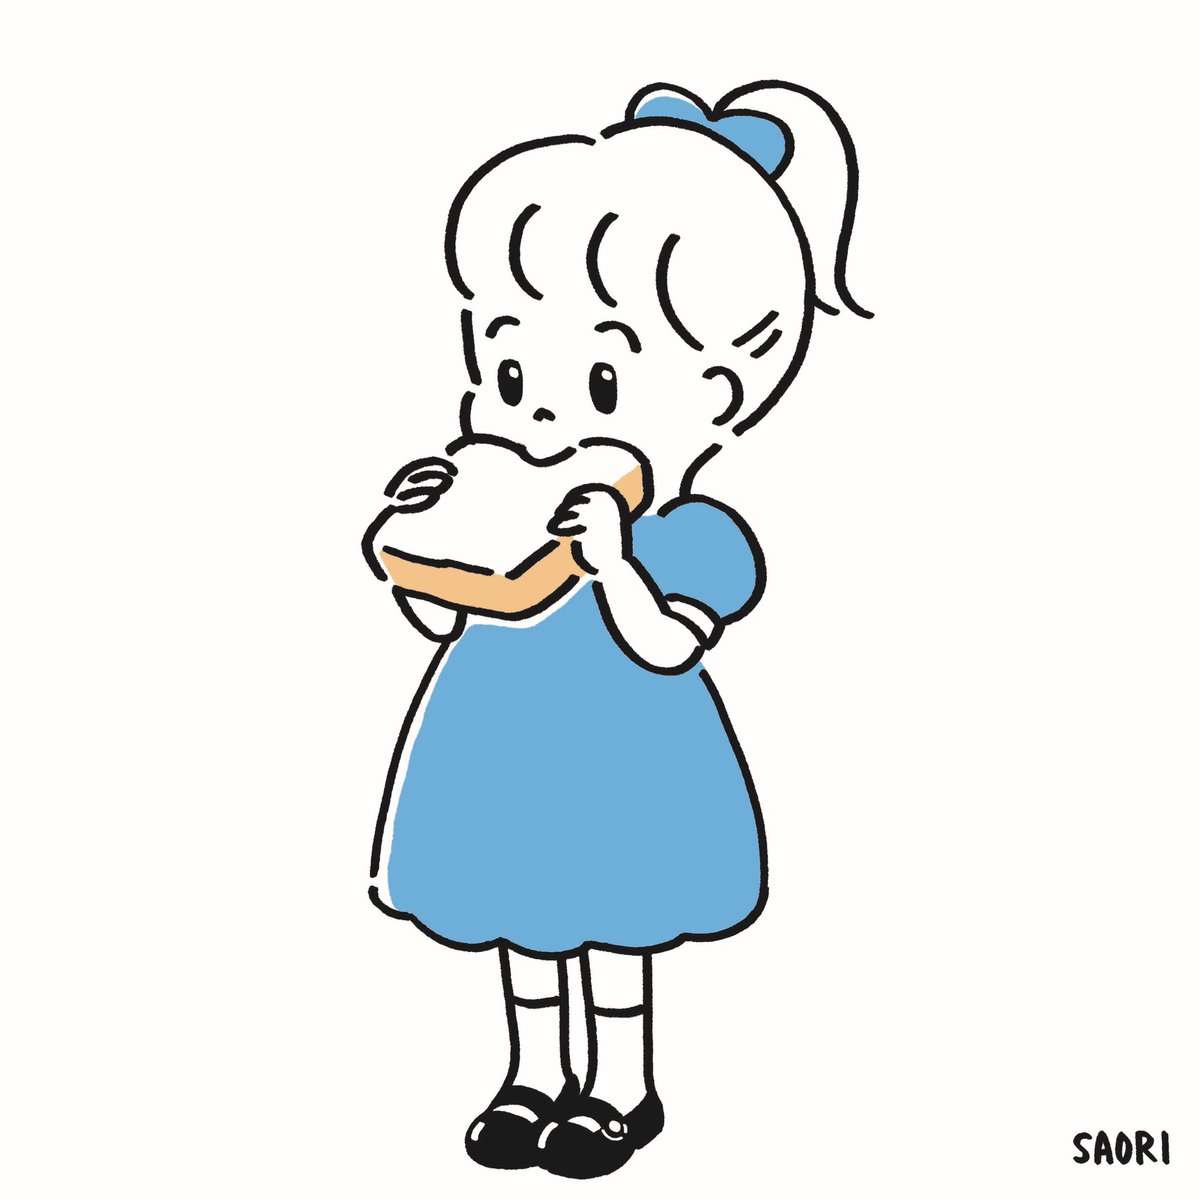 いじまさおり ヤマザキパンの女の子が食べてるパン いつも美味しそうと思う Artwork Illustration Illust イラスト おえかき パン 女の子 T Co Tsaqfwypco Twitter